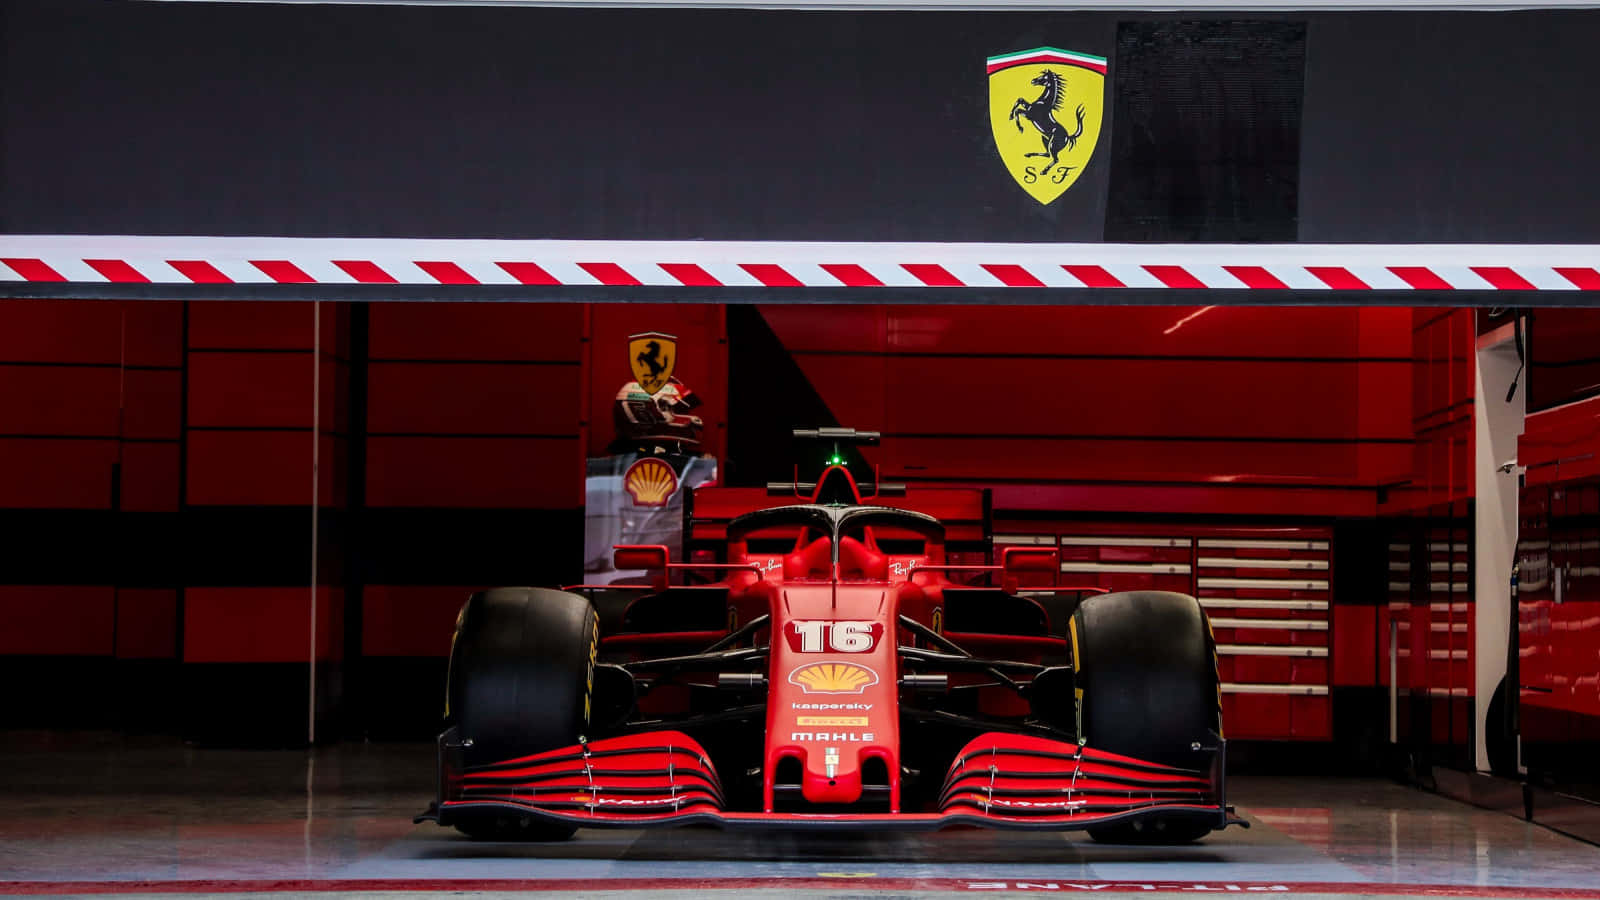 Ferrari F1 Car In A Garage